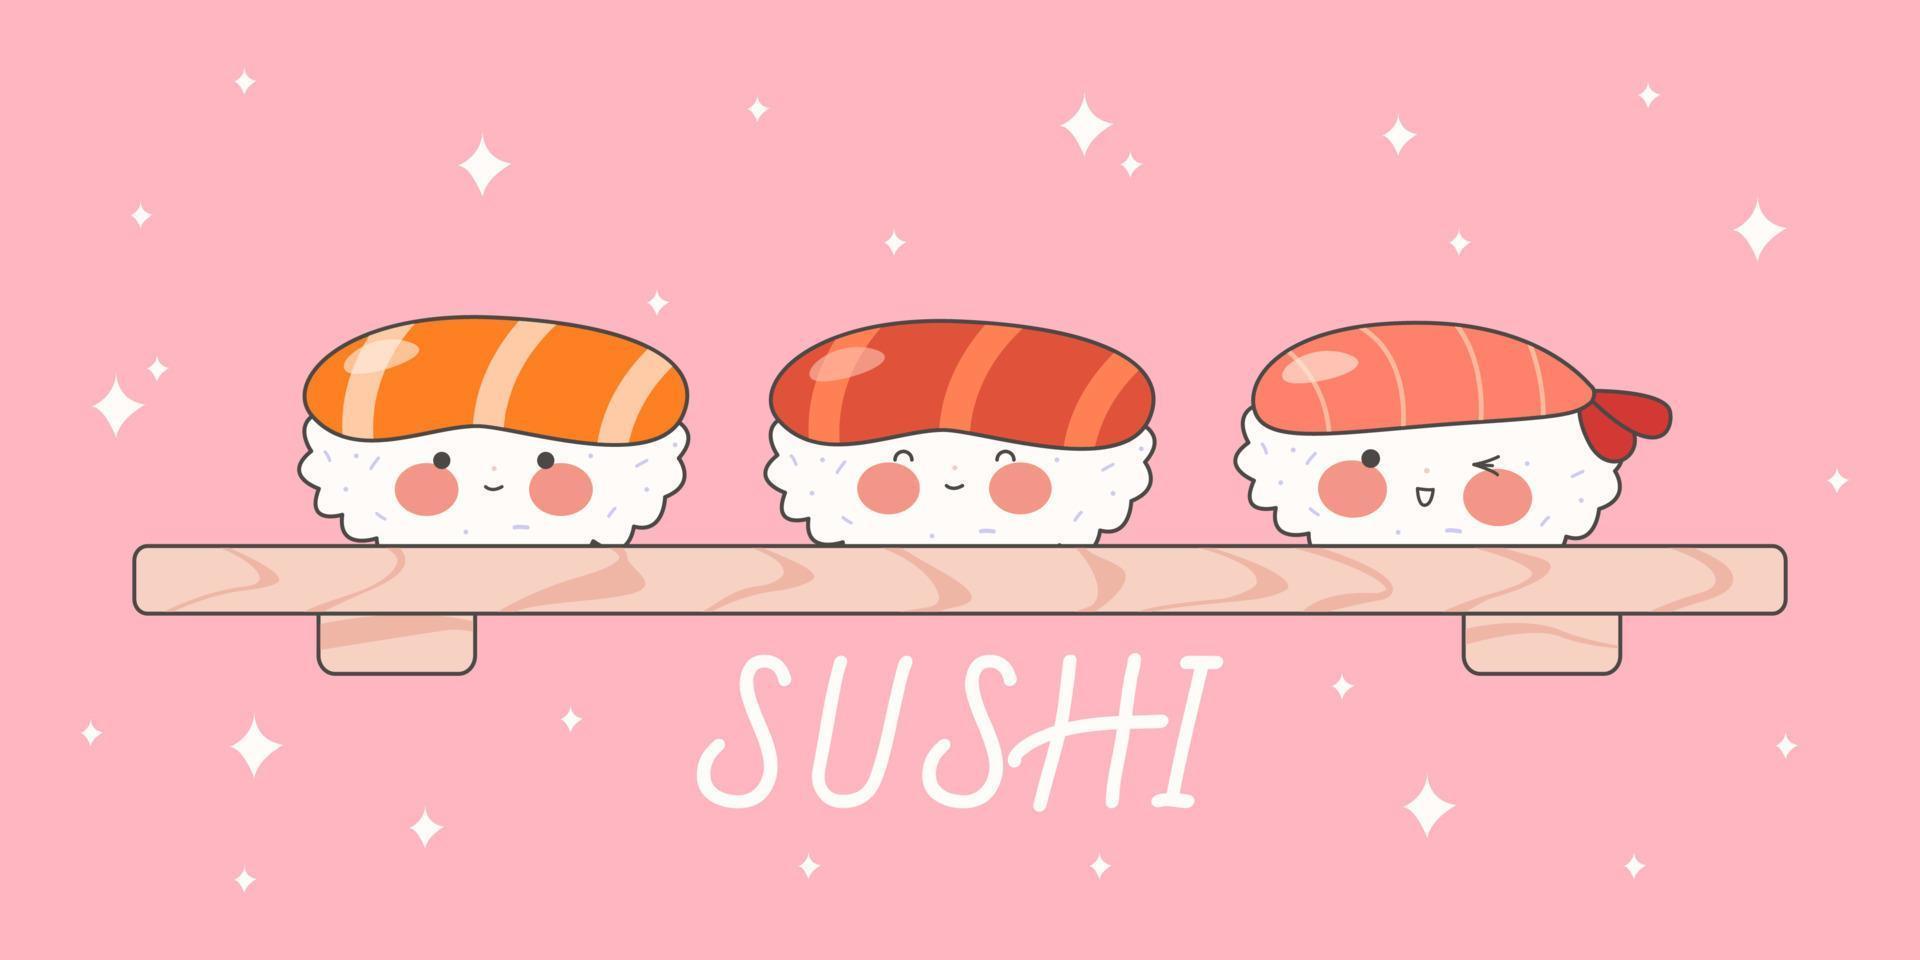 söt sushi uppsättning med leende ansikte och rosa kinder. söt rullar. japansk traditionell kök maträtter. stock vektor illustration.